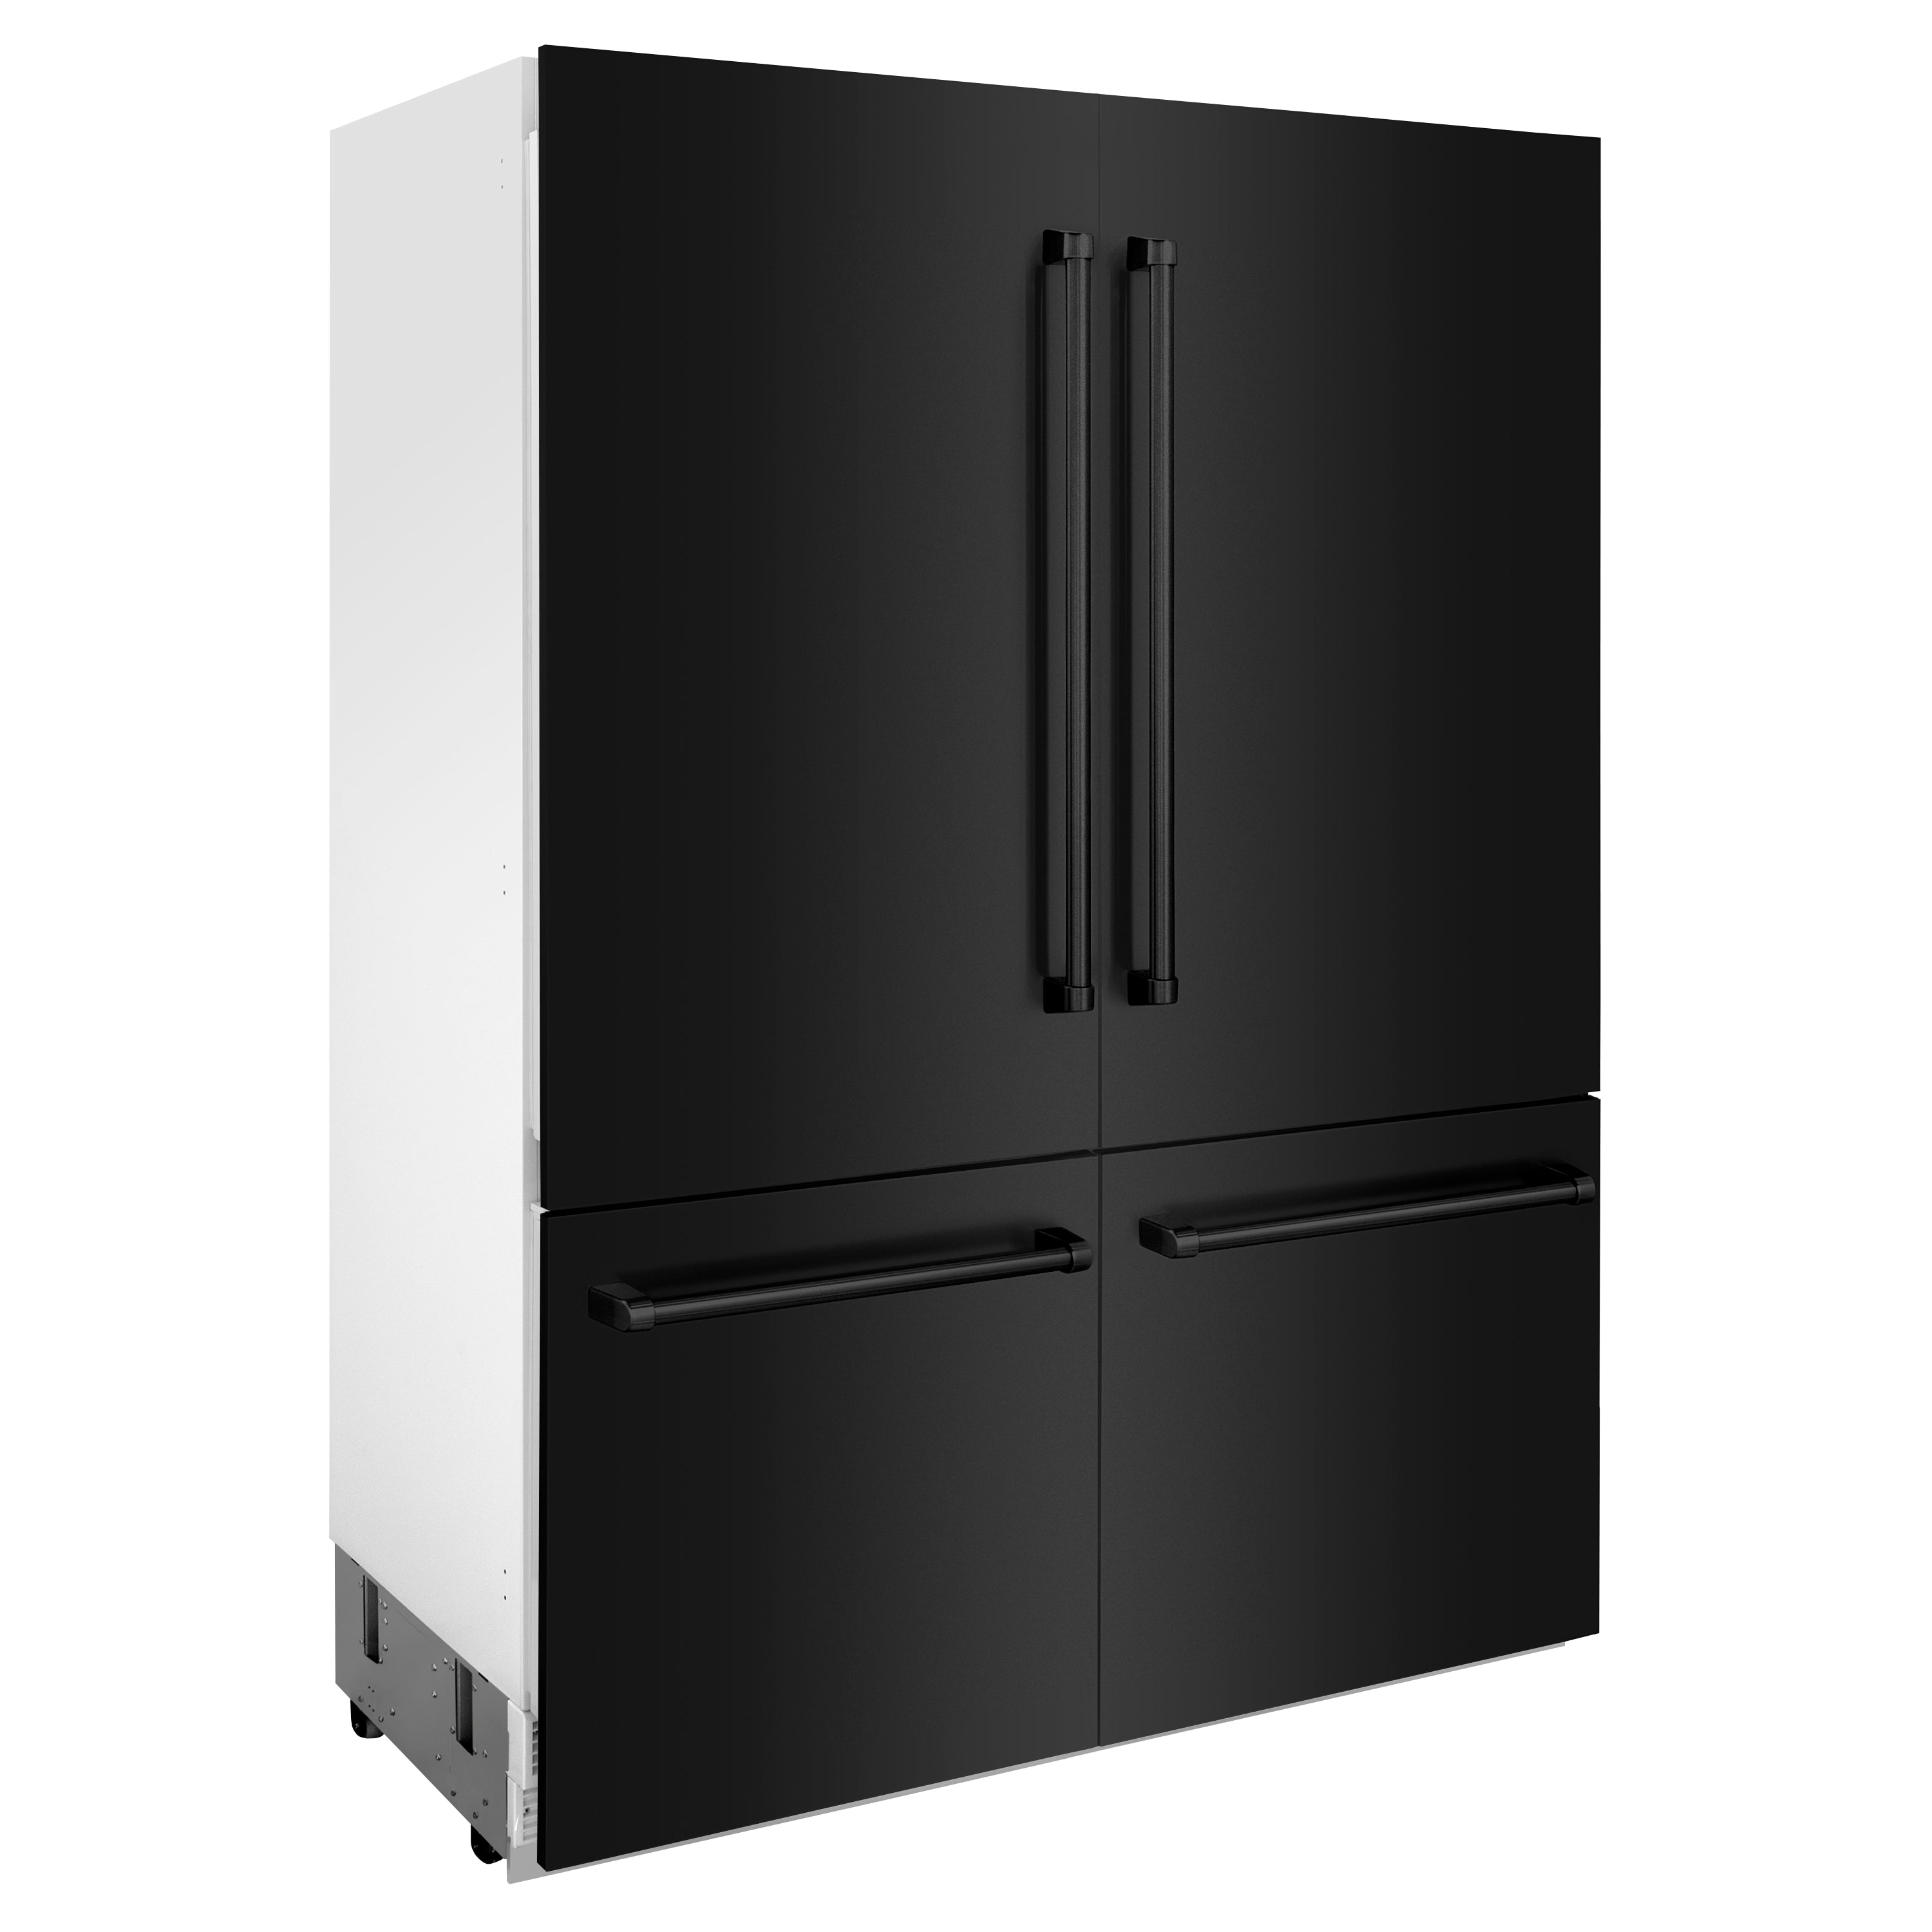 ZLINE 60" 32.2 cu. ft. Built-In 4-Door French Door Refrigerator with Internal Water and Ice Dispenser in Black Stainless Steel